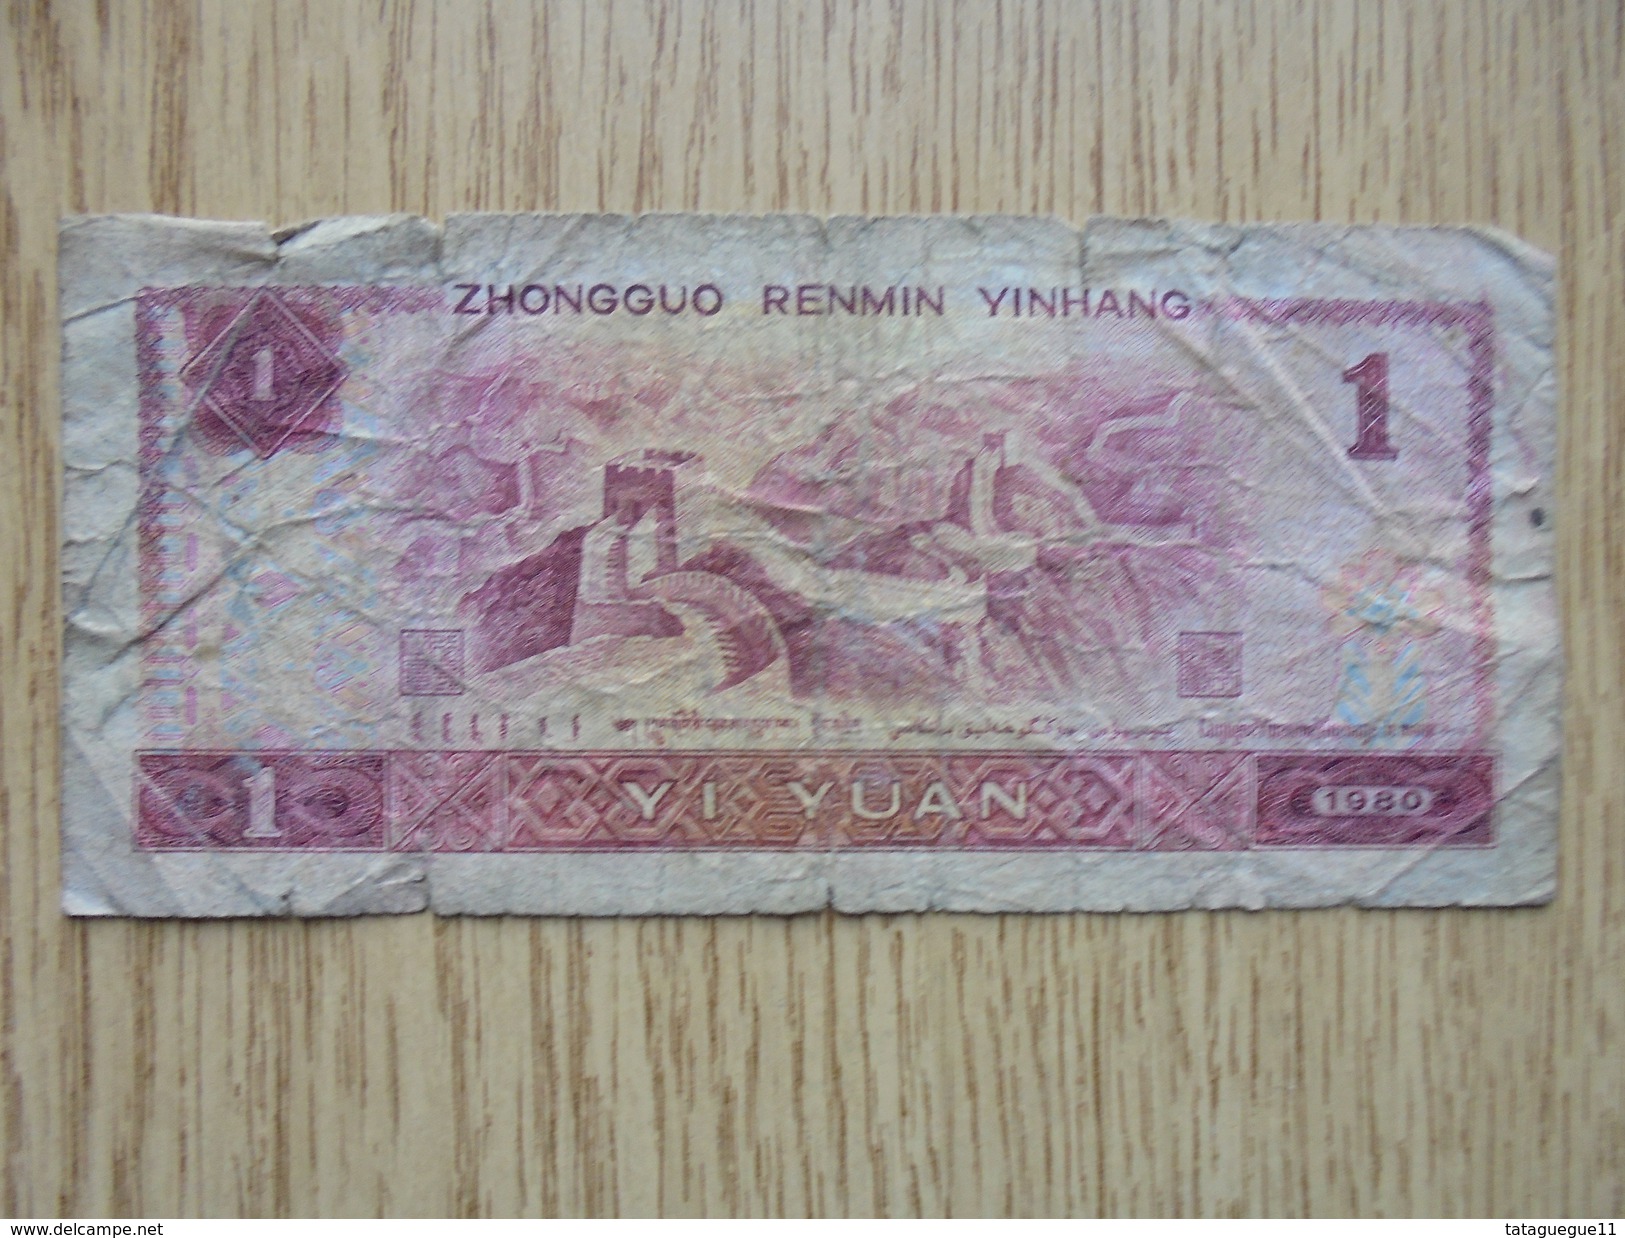 Ancien - Billet De Banque - ZHONGGUO RENMIN YINHANG 1 YI YUAN - 1980 - Other - Asia